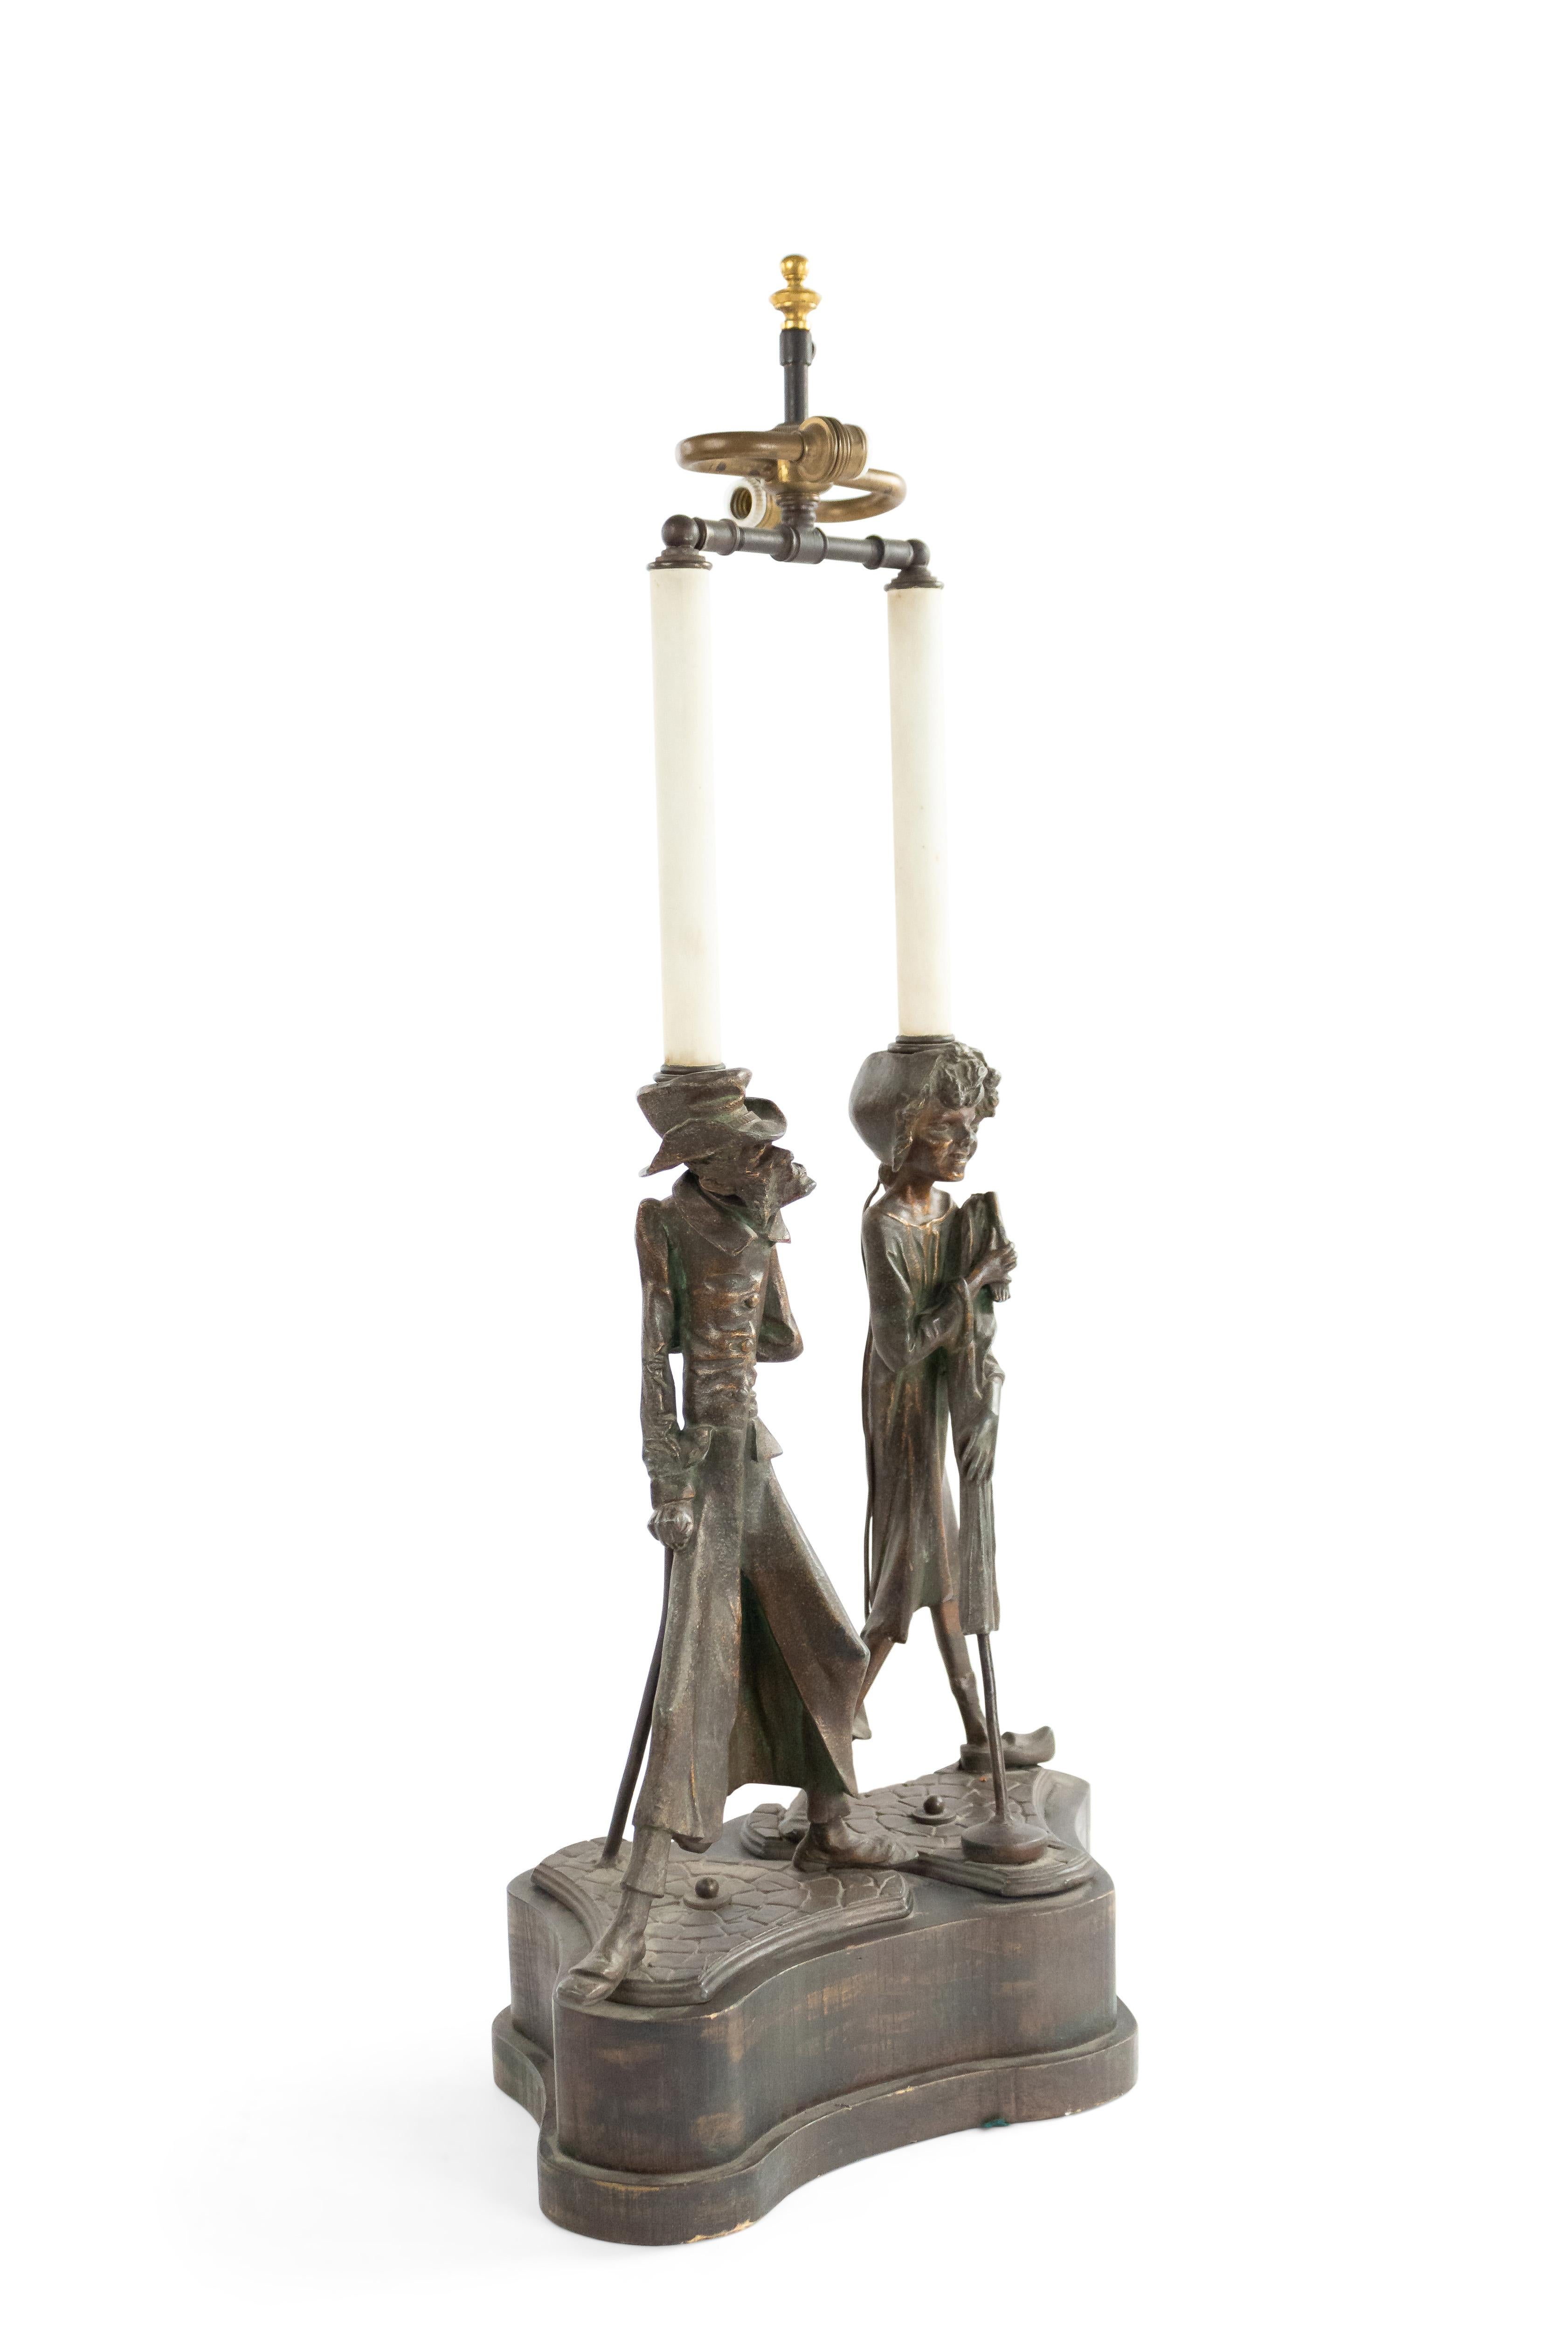 Lampe de table en métal de style victorien anglais avec un homme et une femme de caractère debout sur une base en bois façonné.
